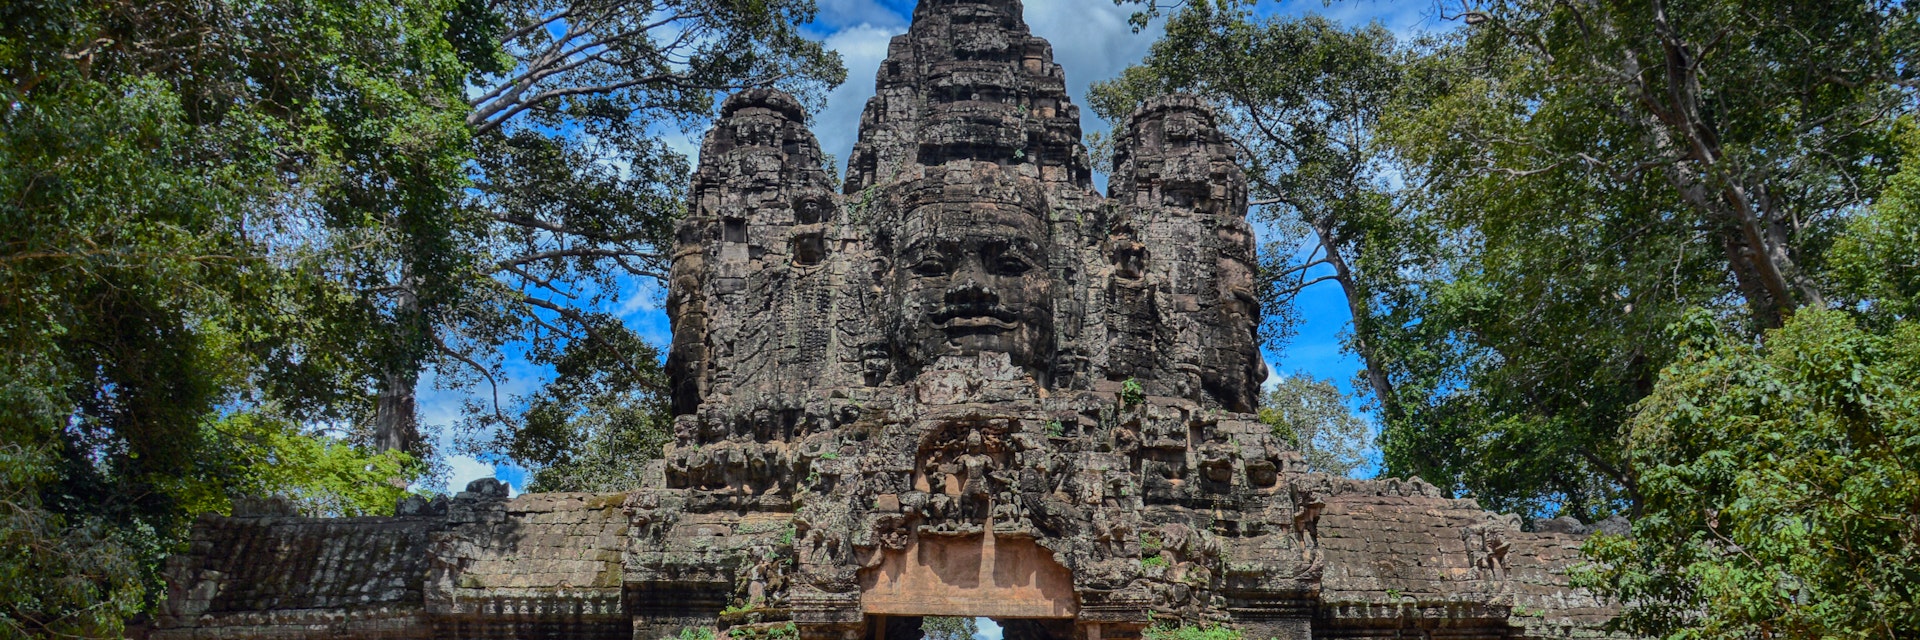 Angkor Thom East Gate.